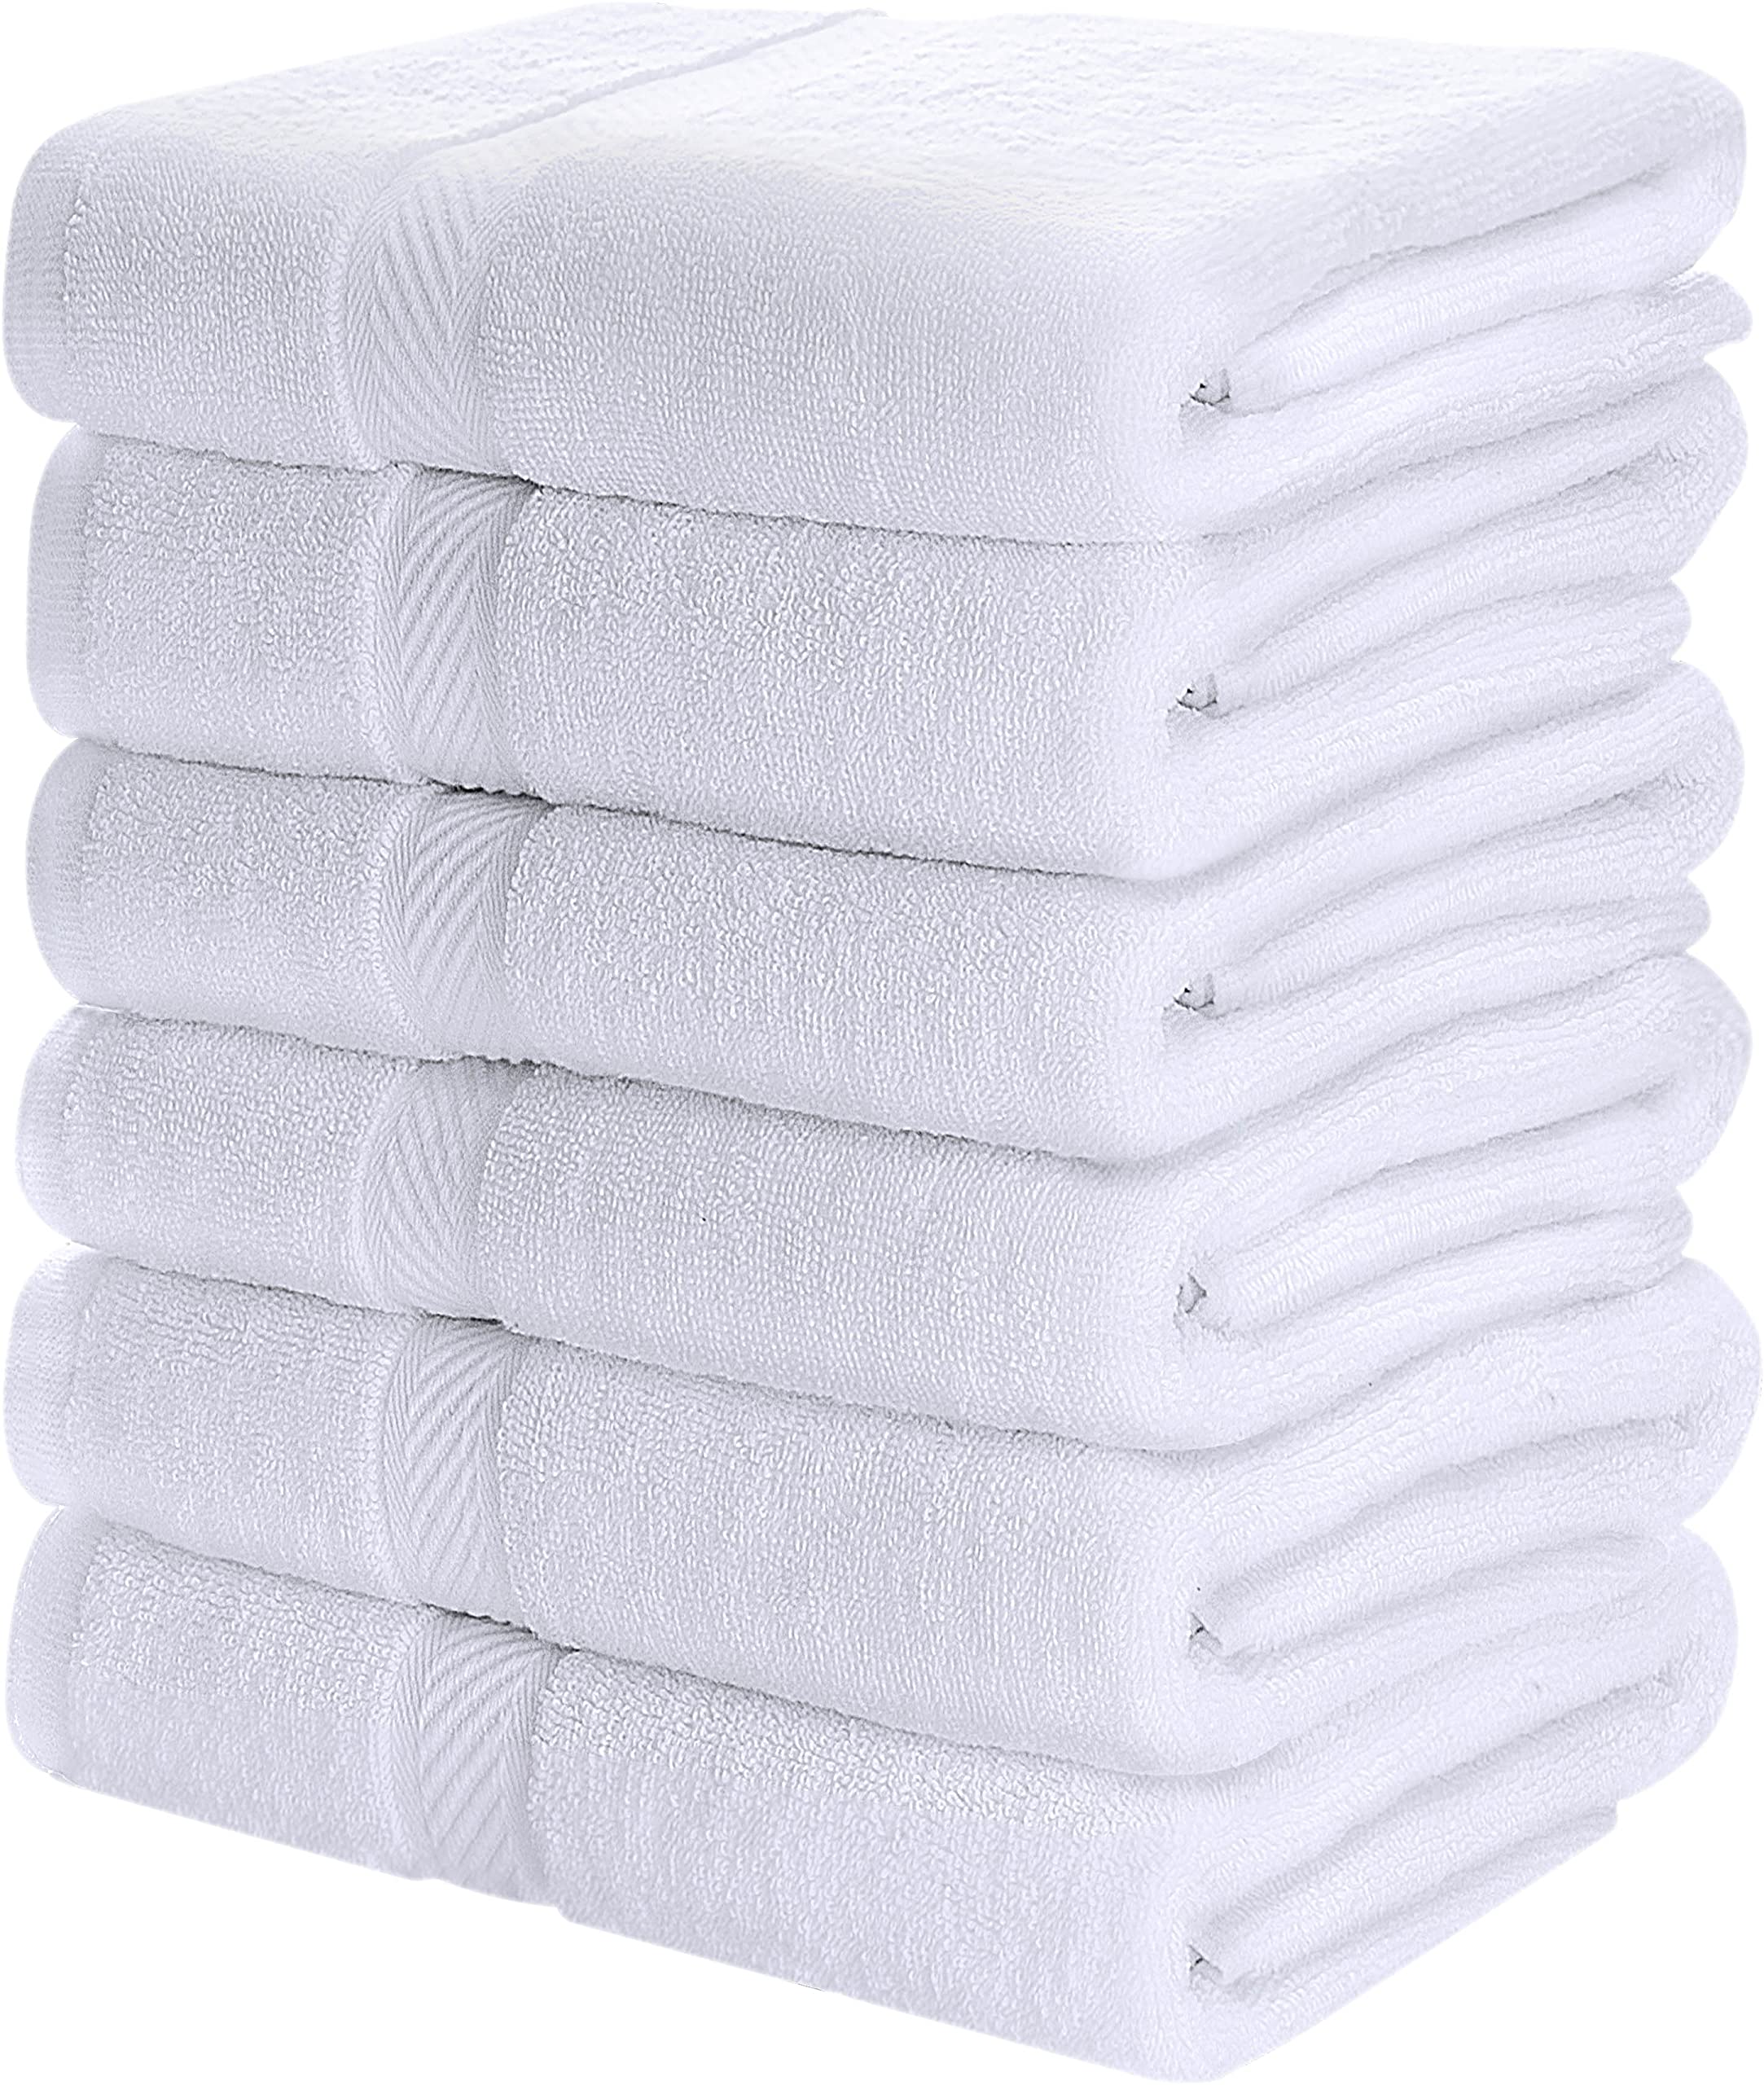 Utopia Towels Kitchen Towels [6 Pack], 15 x 25 Inches, 100% Ring Spun  Cotton Super Soft and Absorbent Dish Towels, Tea Towels and Bar Towels  (Aqua)